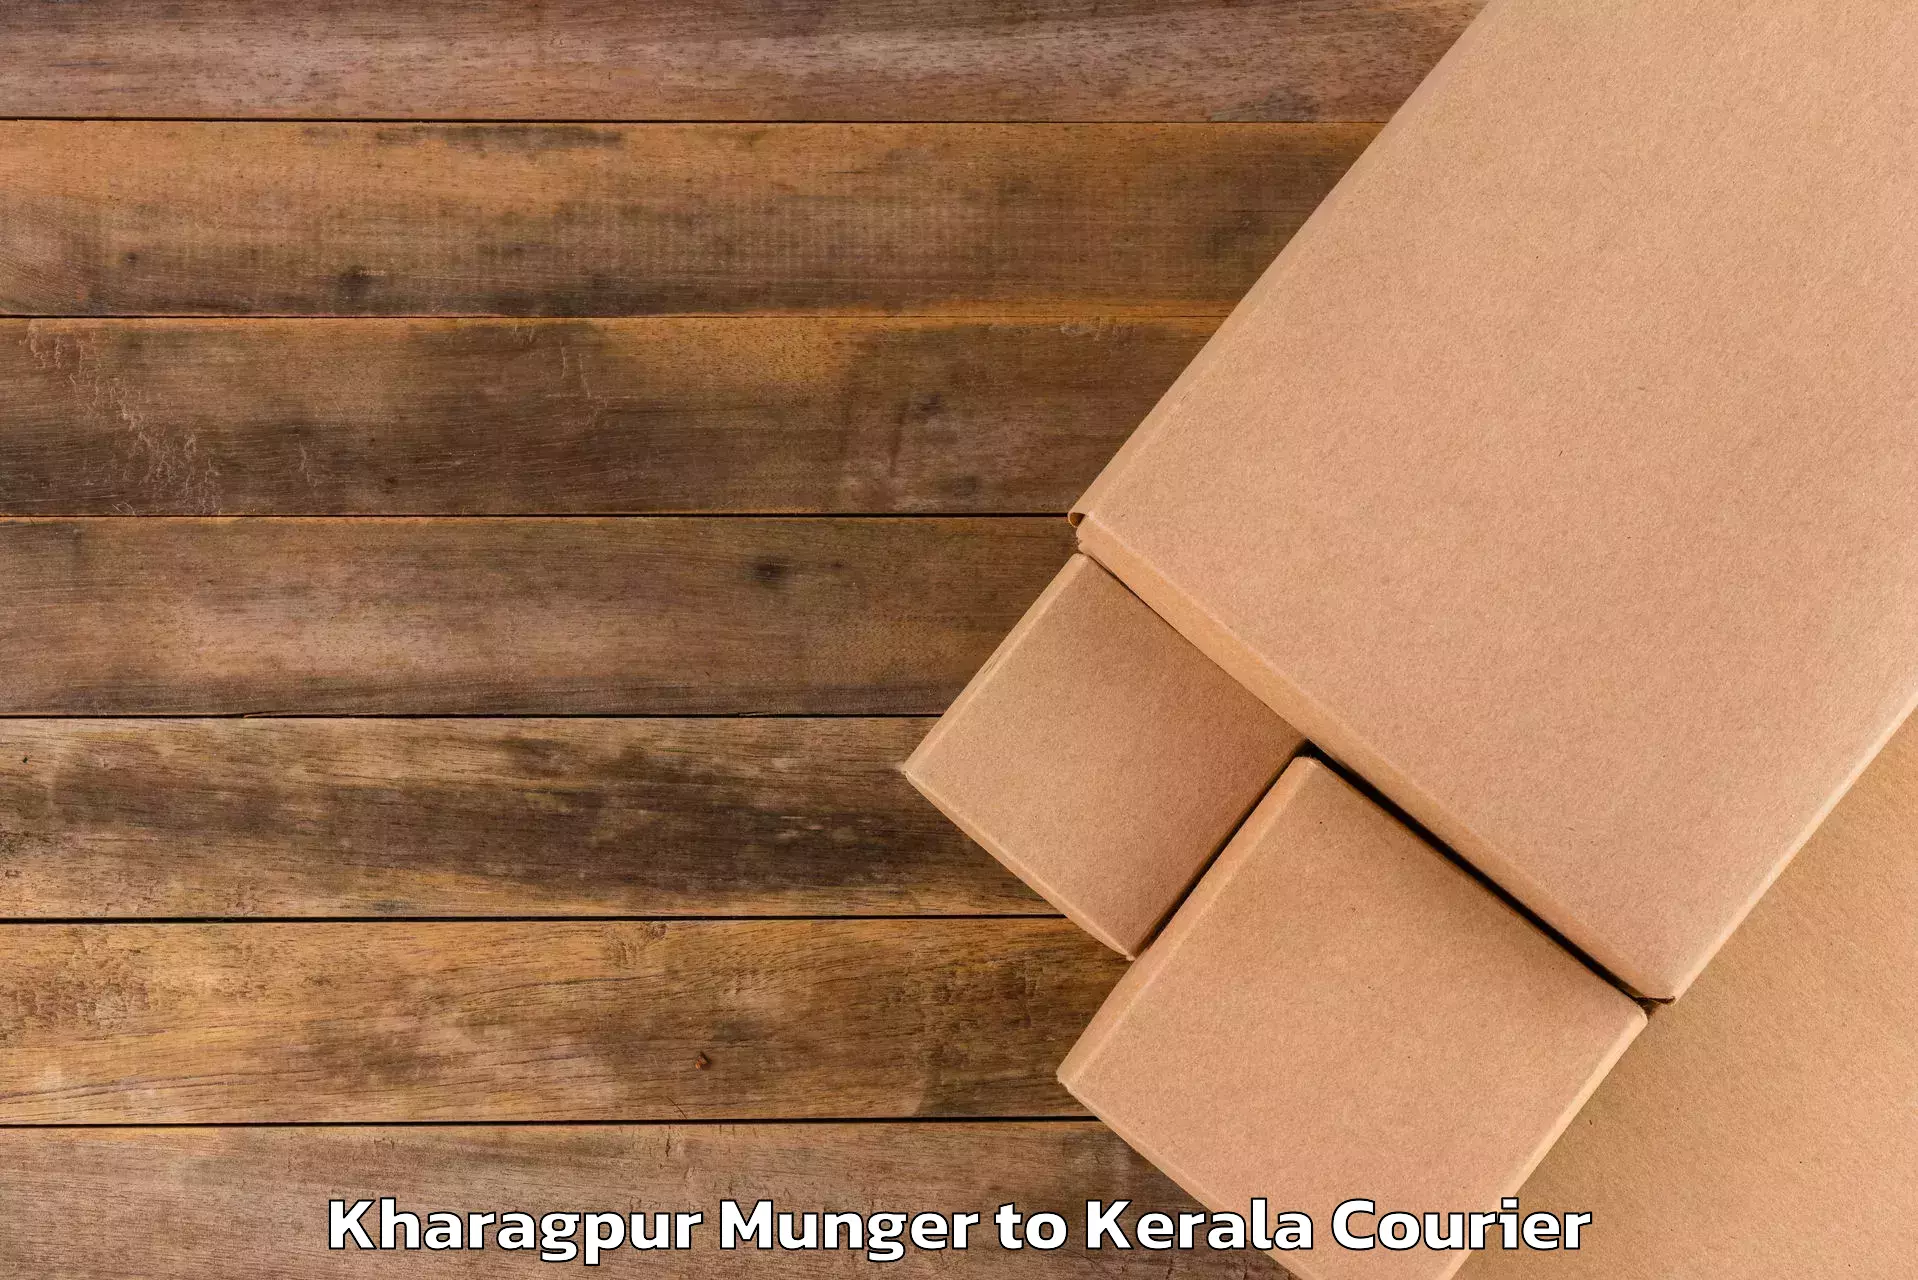 Rural baggage transport Kharagpur Munger to Alathur Malabar